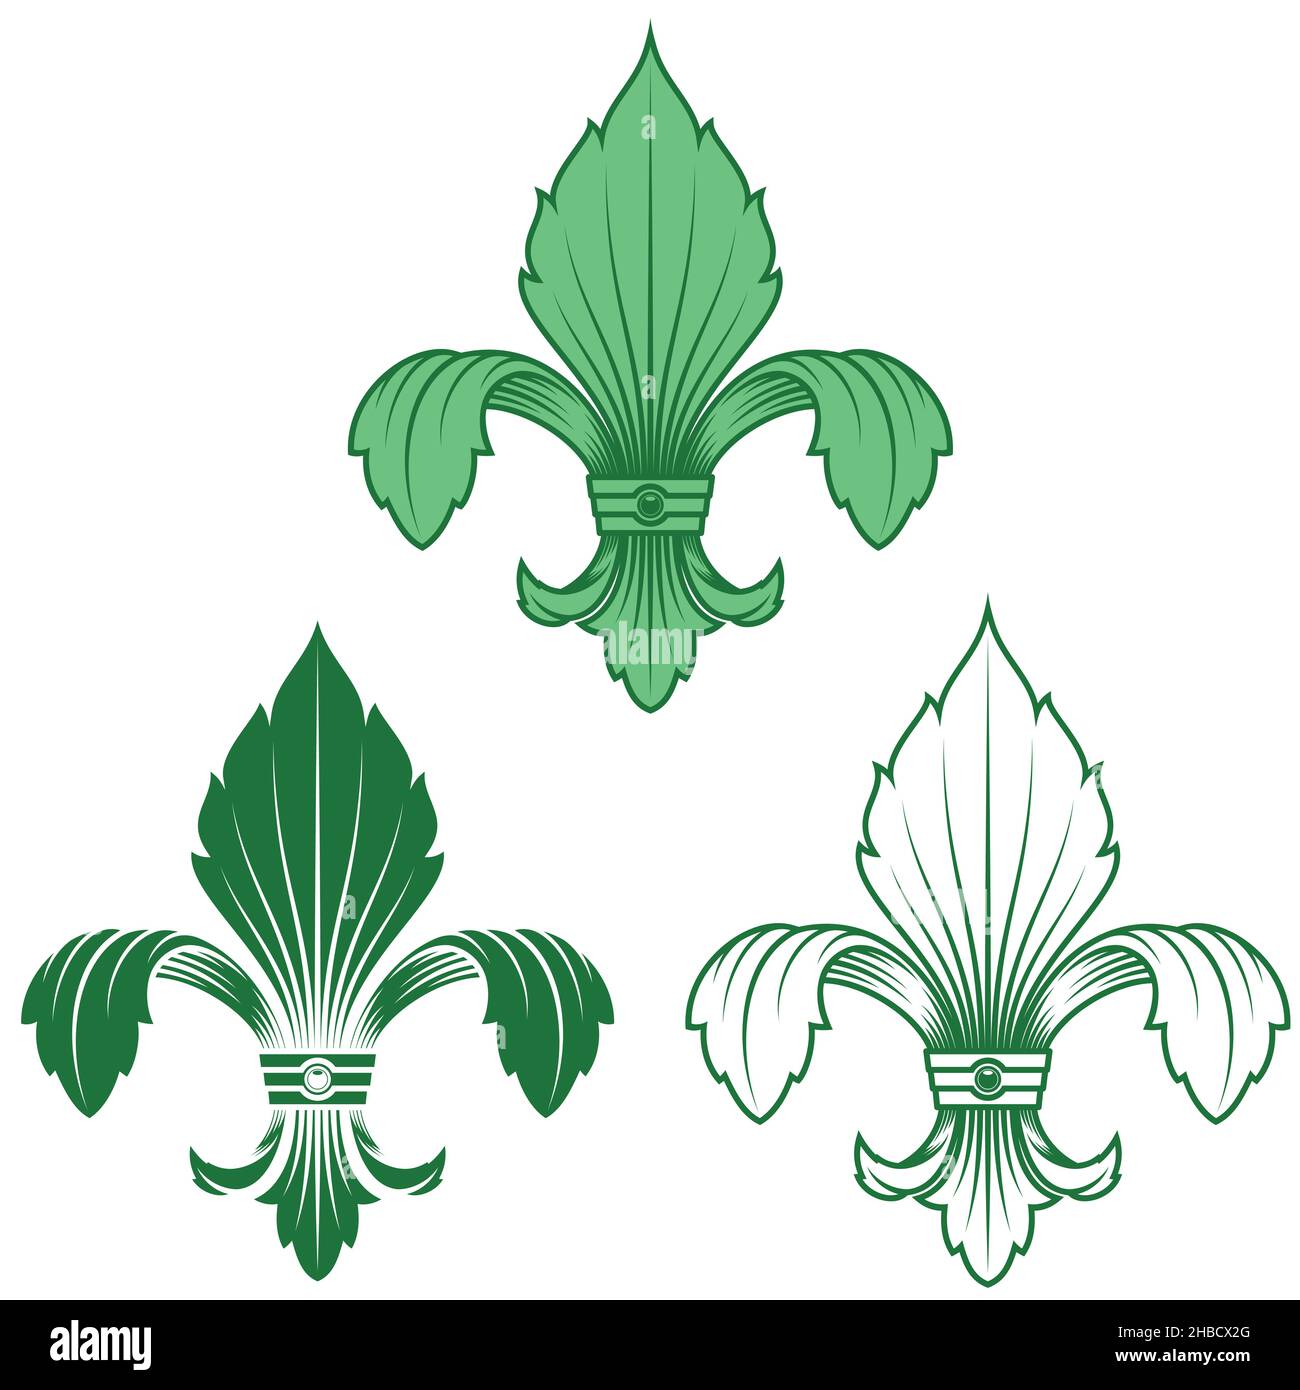 Fleur de lis vector design, representation of the fleur de lis, symbol used in medieval heraldry Stock Vector